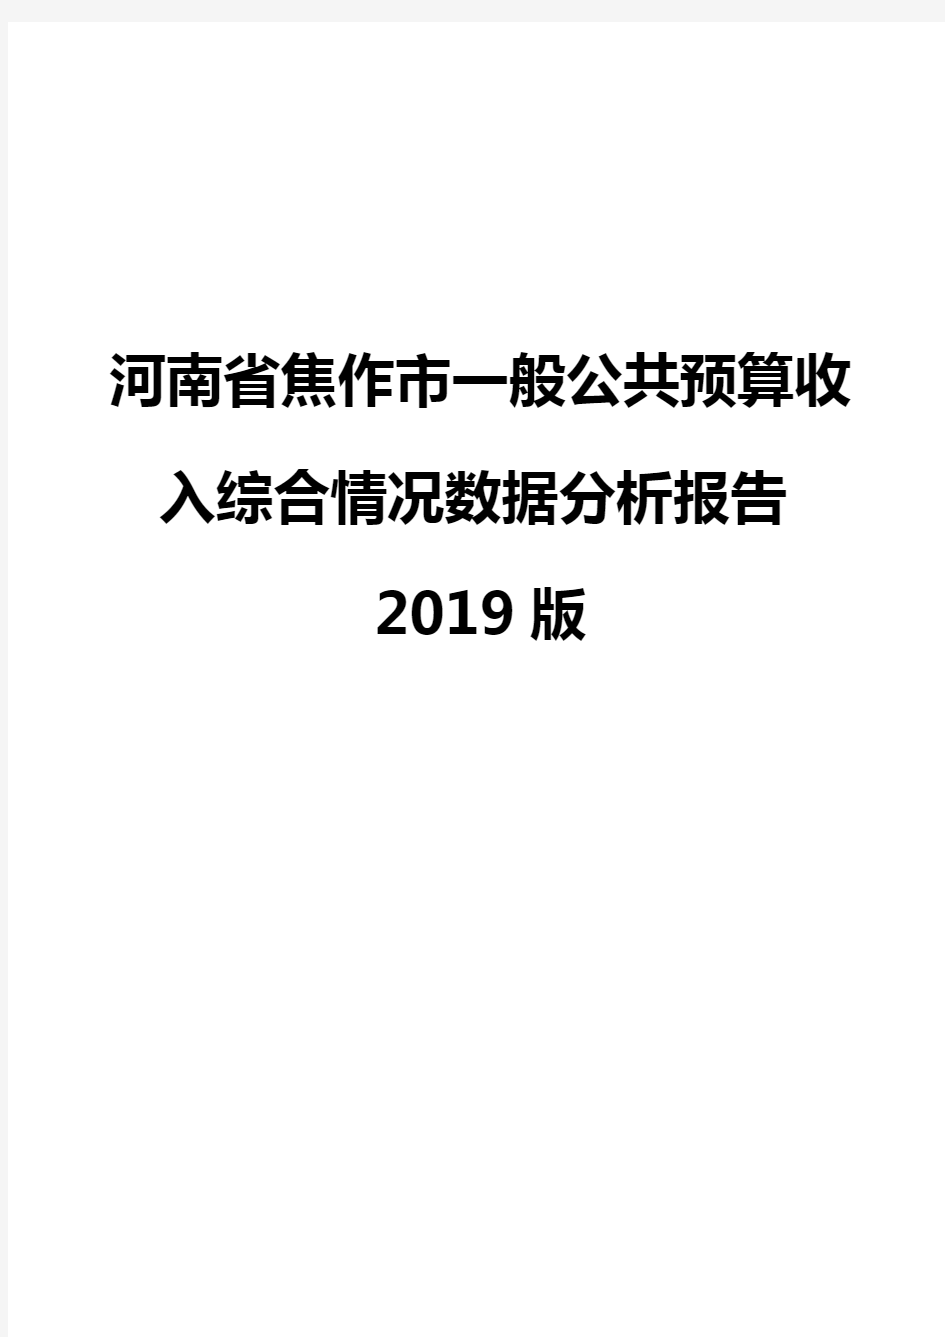 河南省焦作市一般公共预算收入综合情况数据分析报告2019版